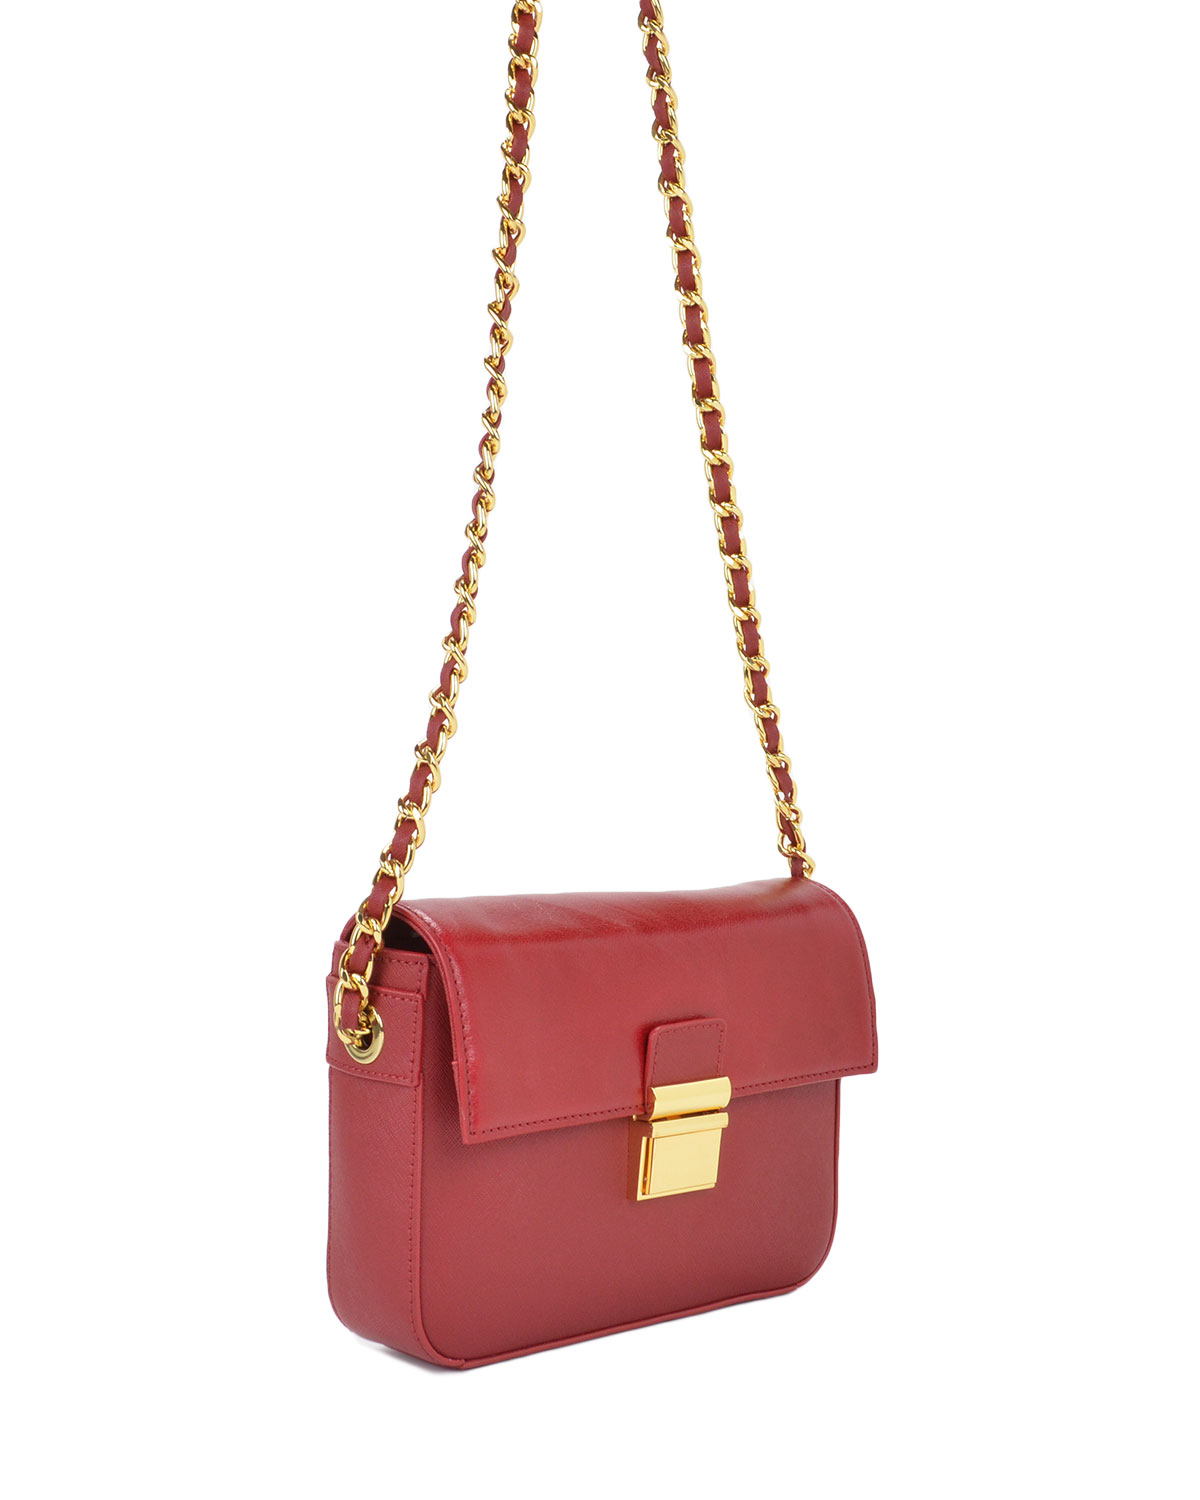 Badgley mischka Valentina Saffiano Handbag in Red | Lyst